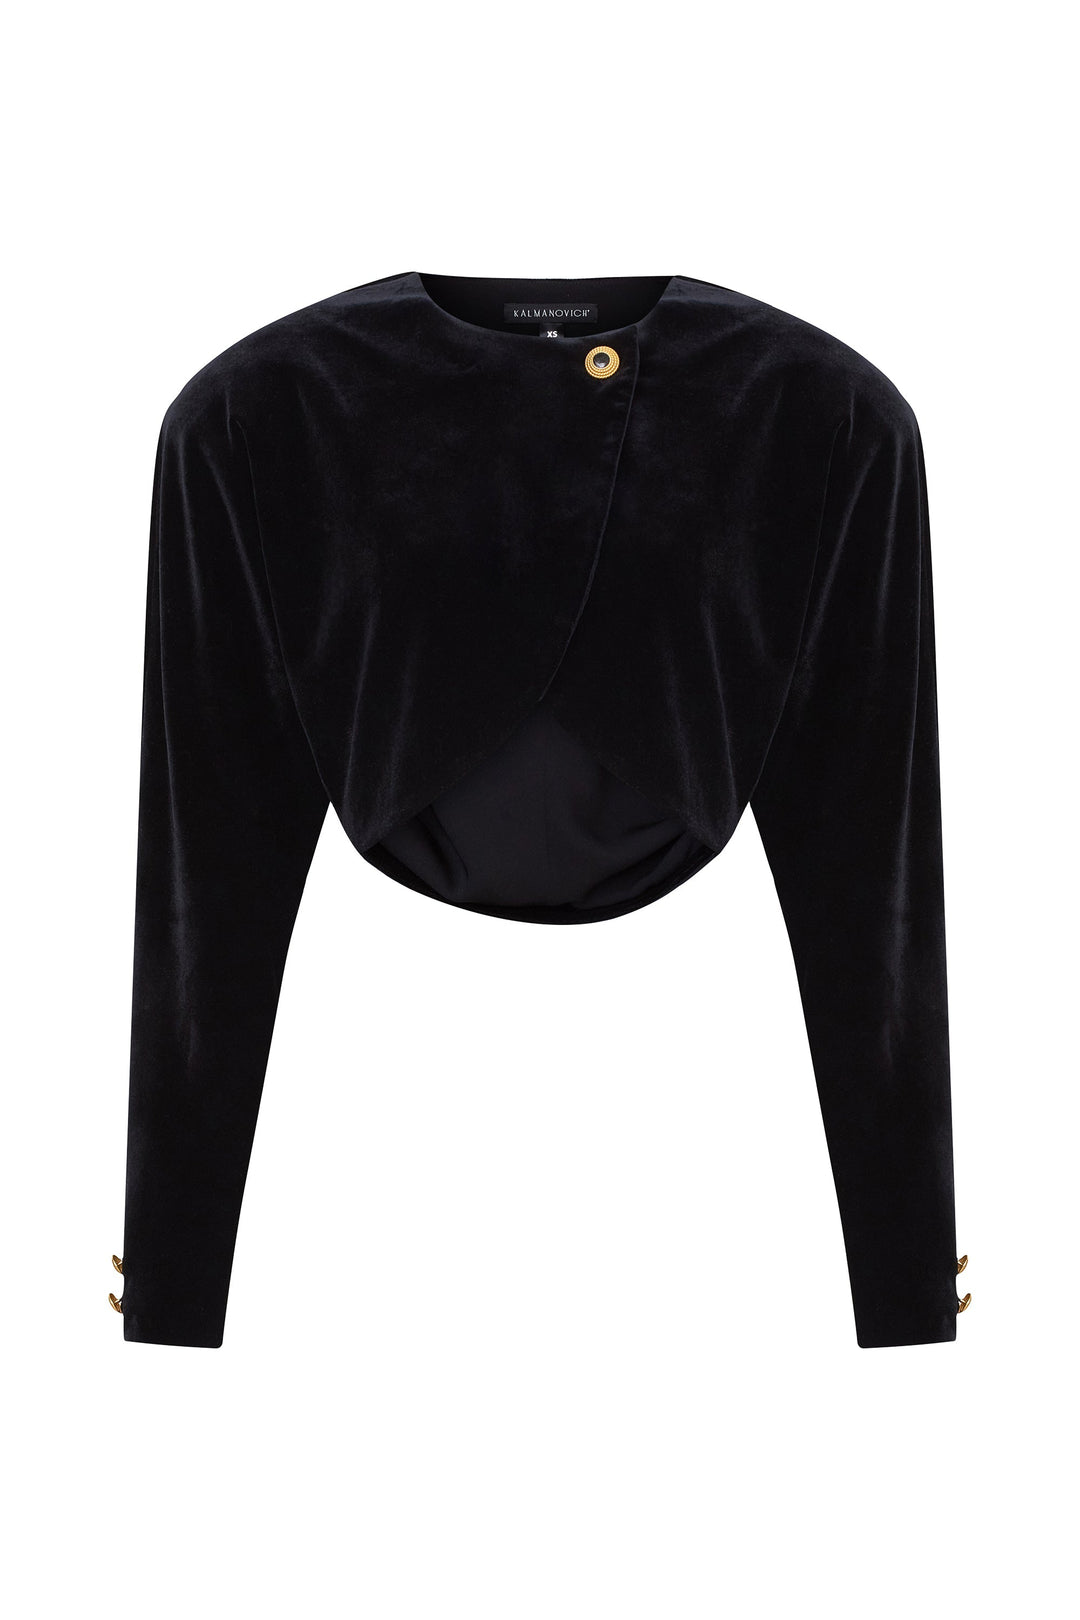 Magenta velvet leggings with black girdle – Kalmanovich Global